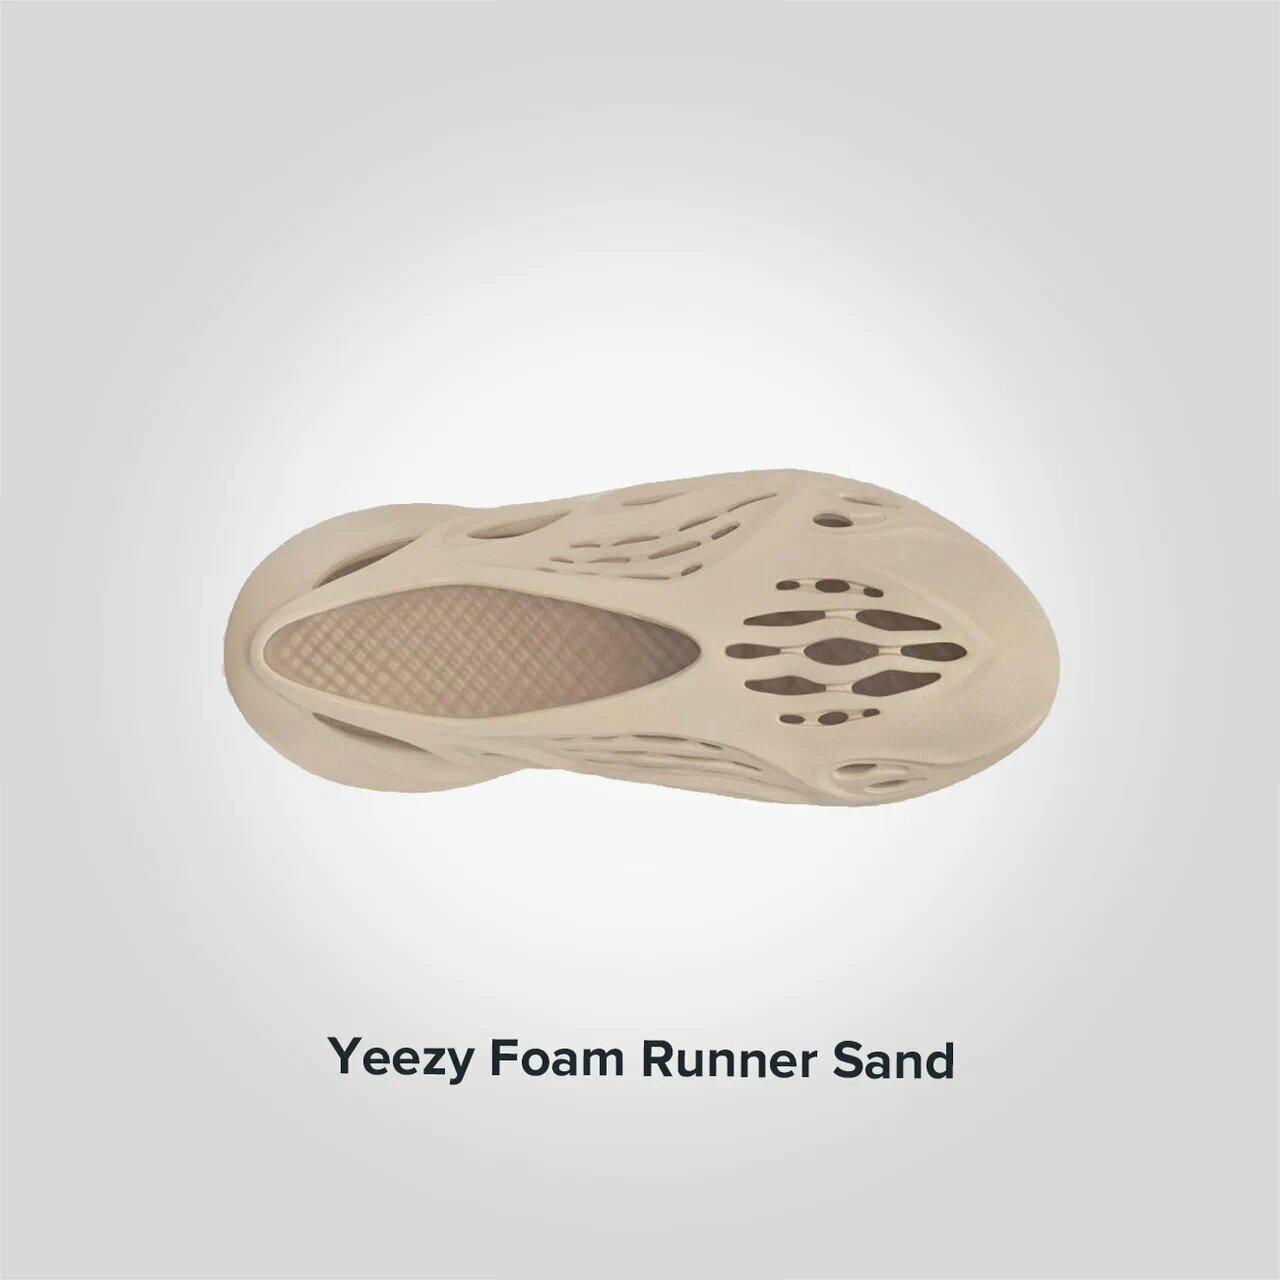 Yeezy Foam Runner Sand